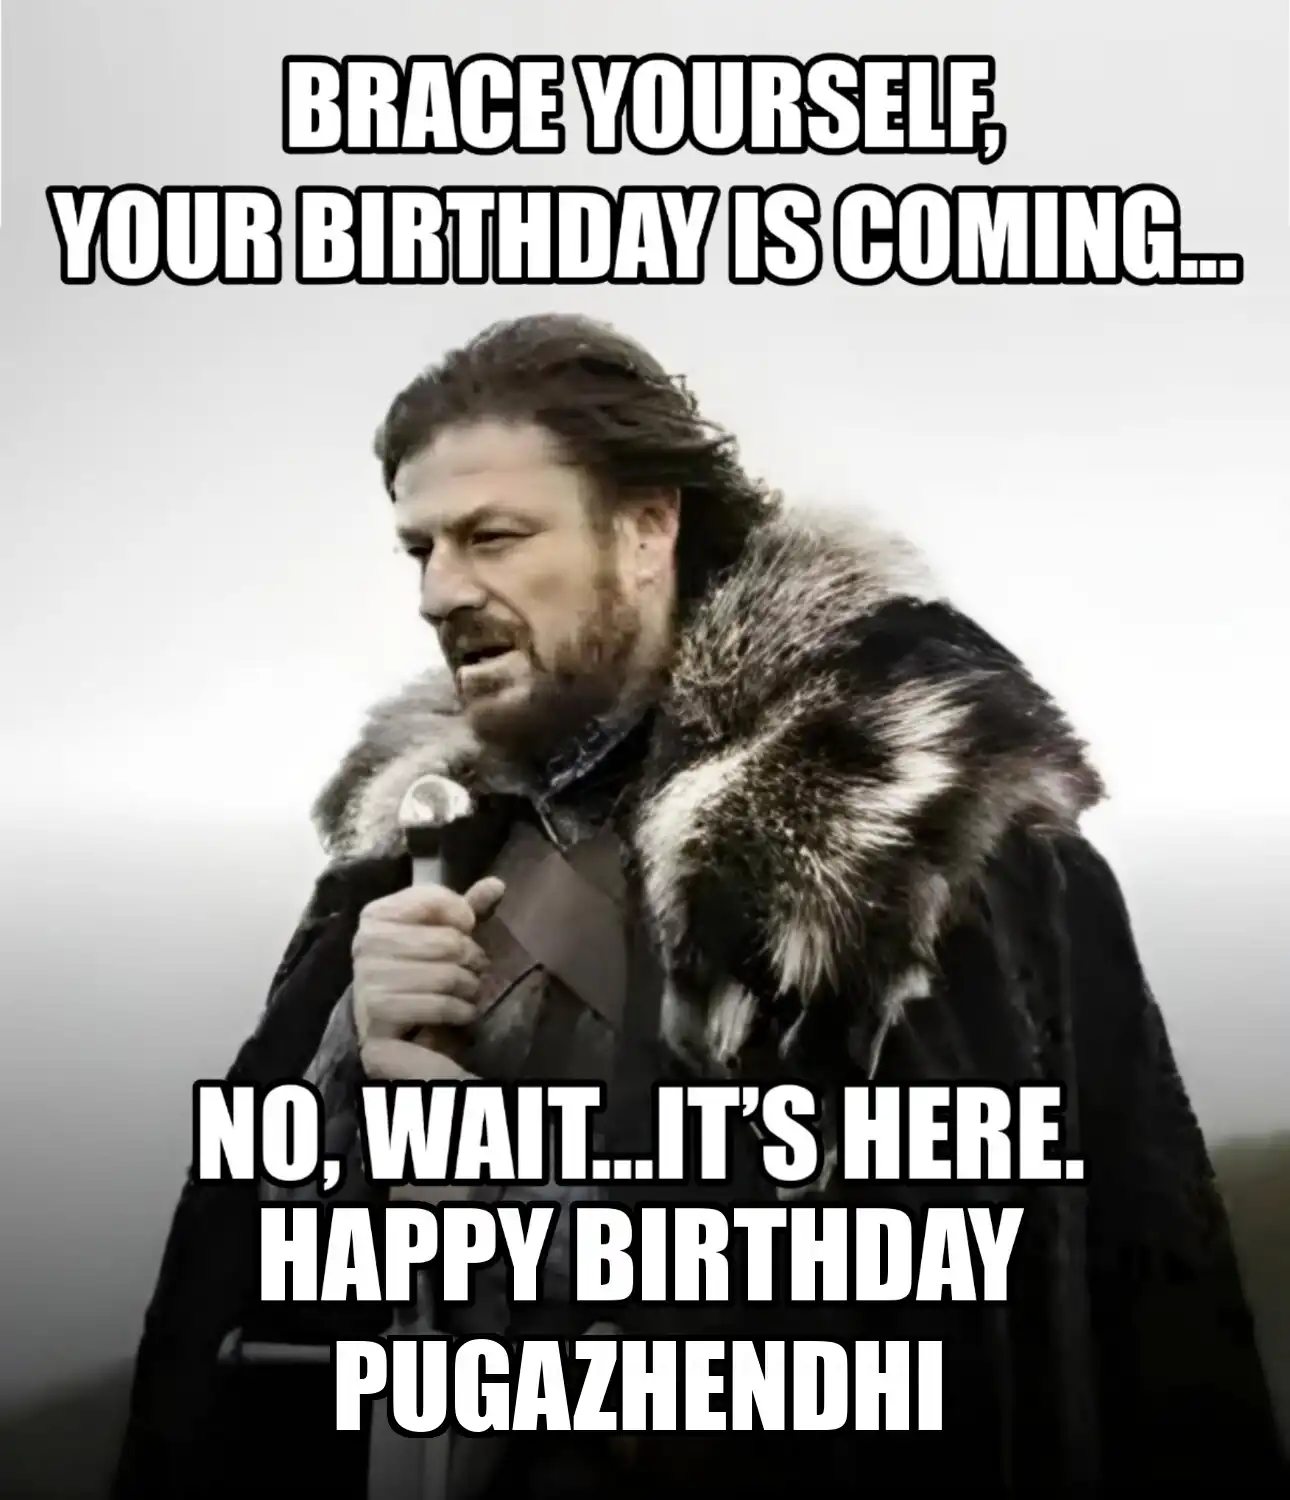 Happy Birthday Pugazhendhi Brace Yourself Your Birthday Is Coming Meme